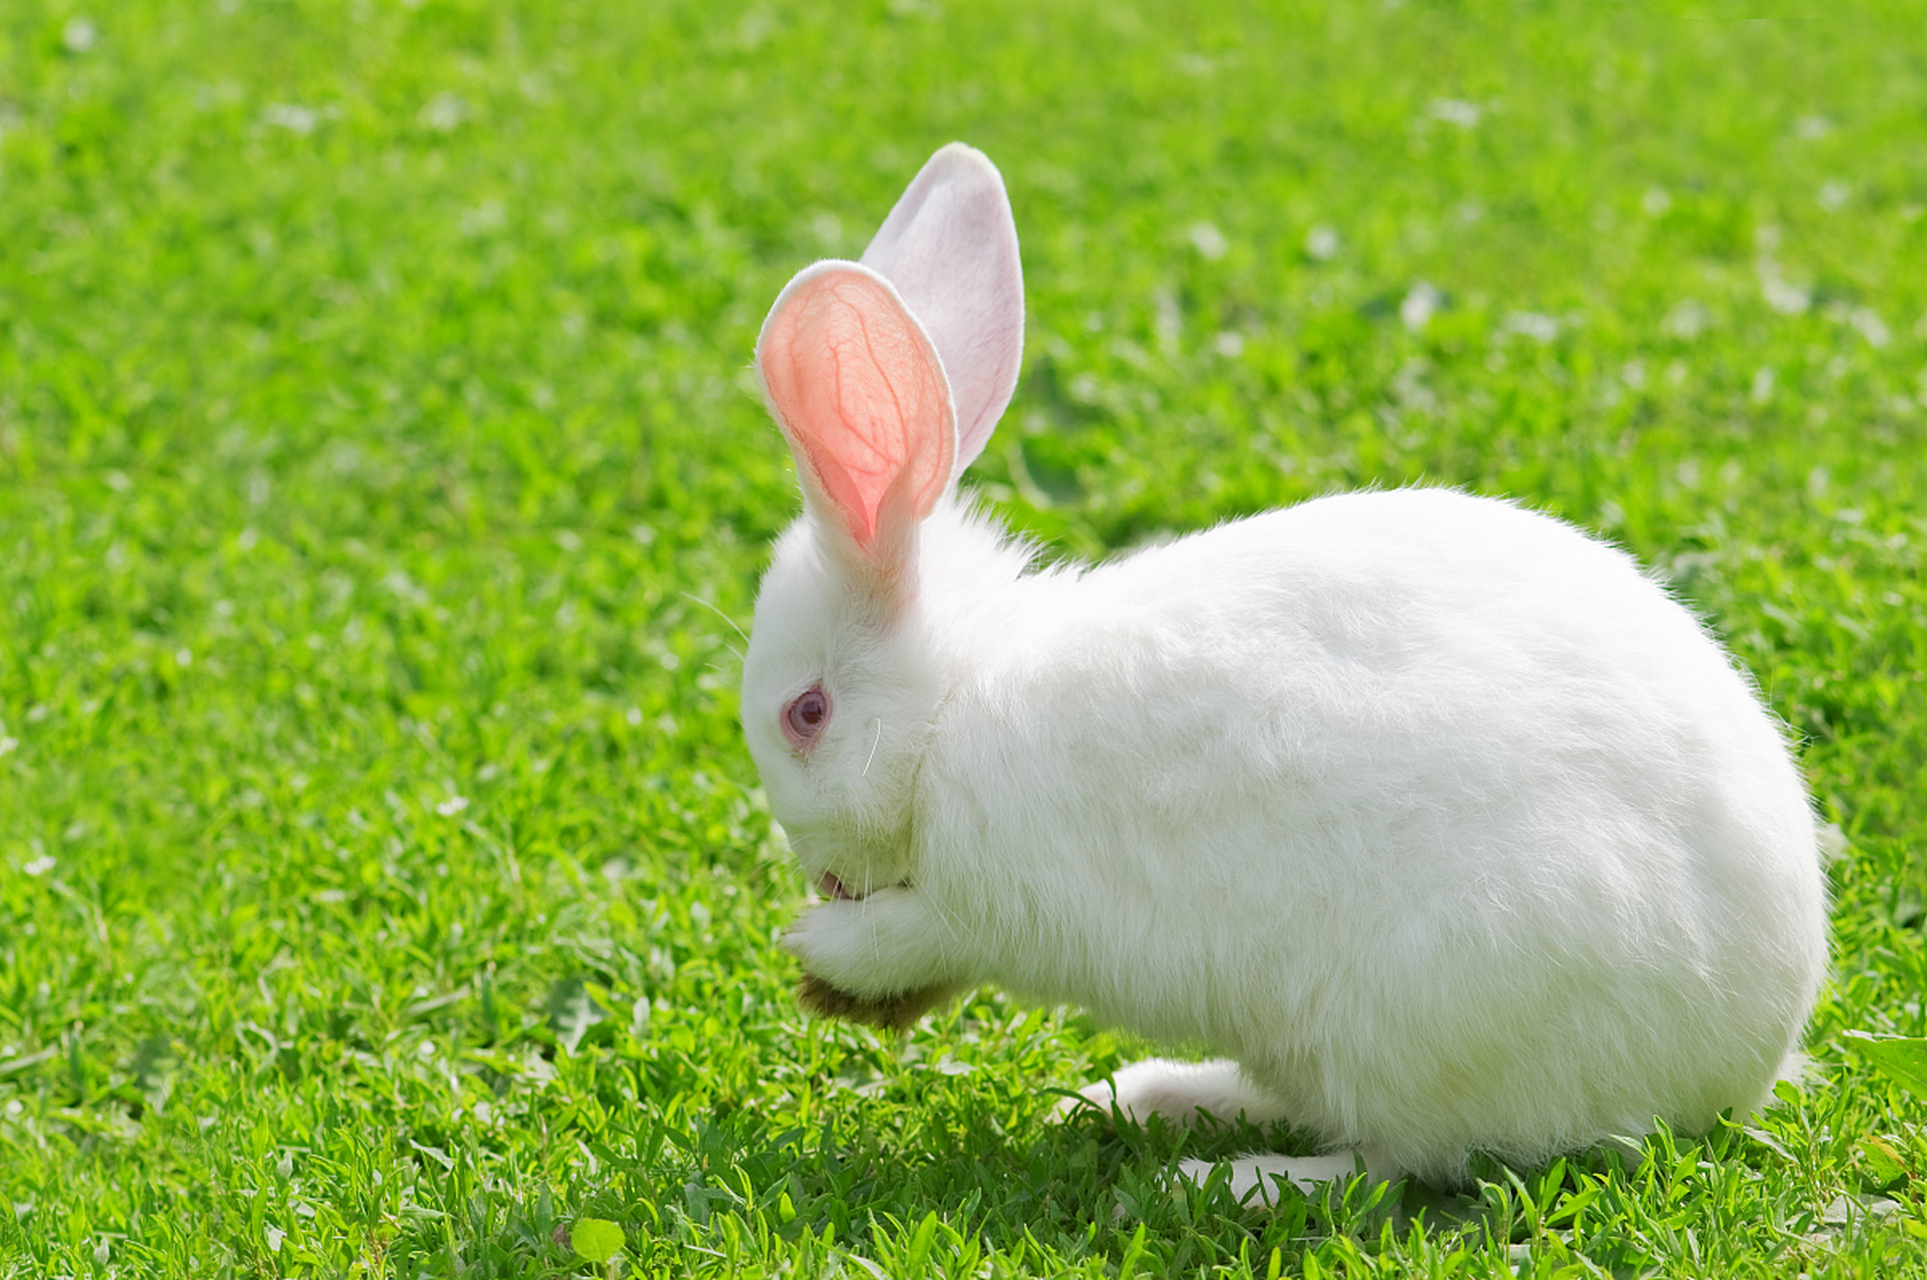 此外,兔子的科学应用广泛,为人类科学研究提供了重要样